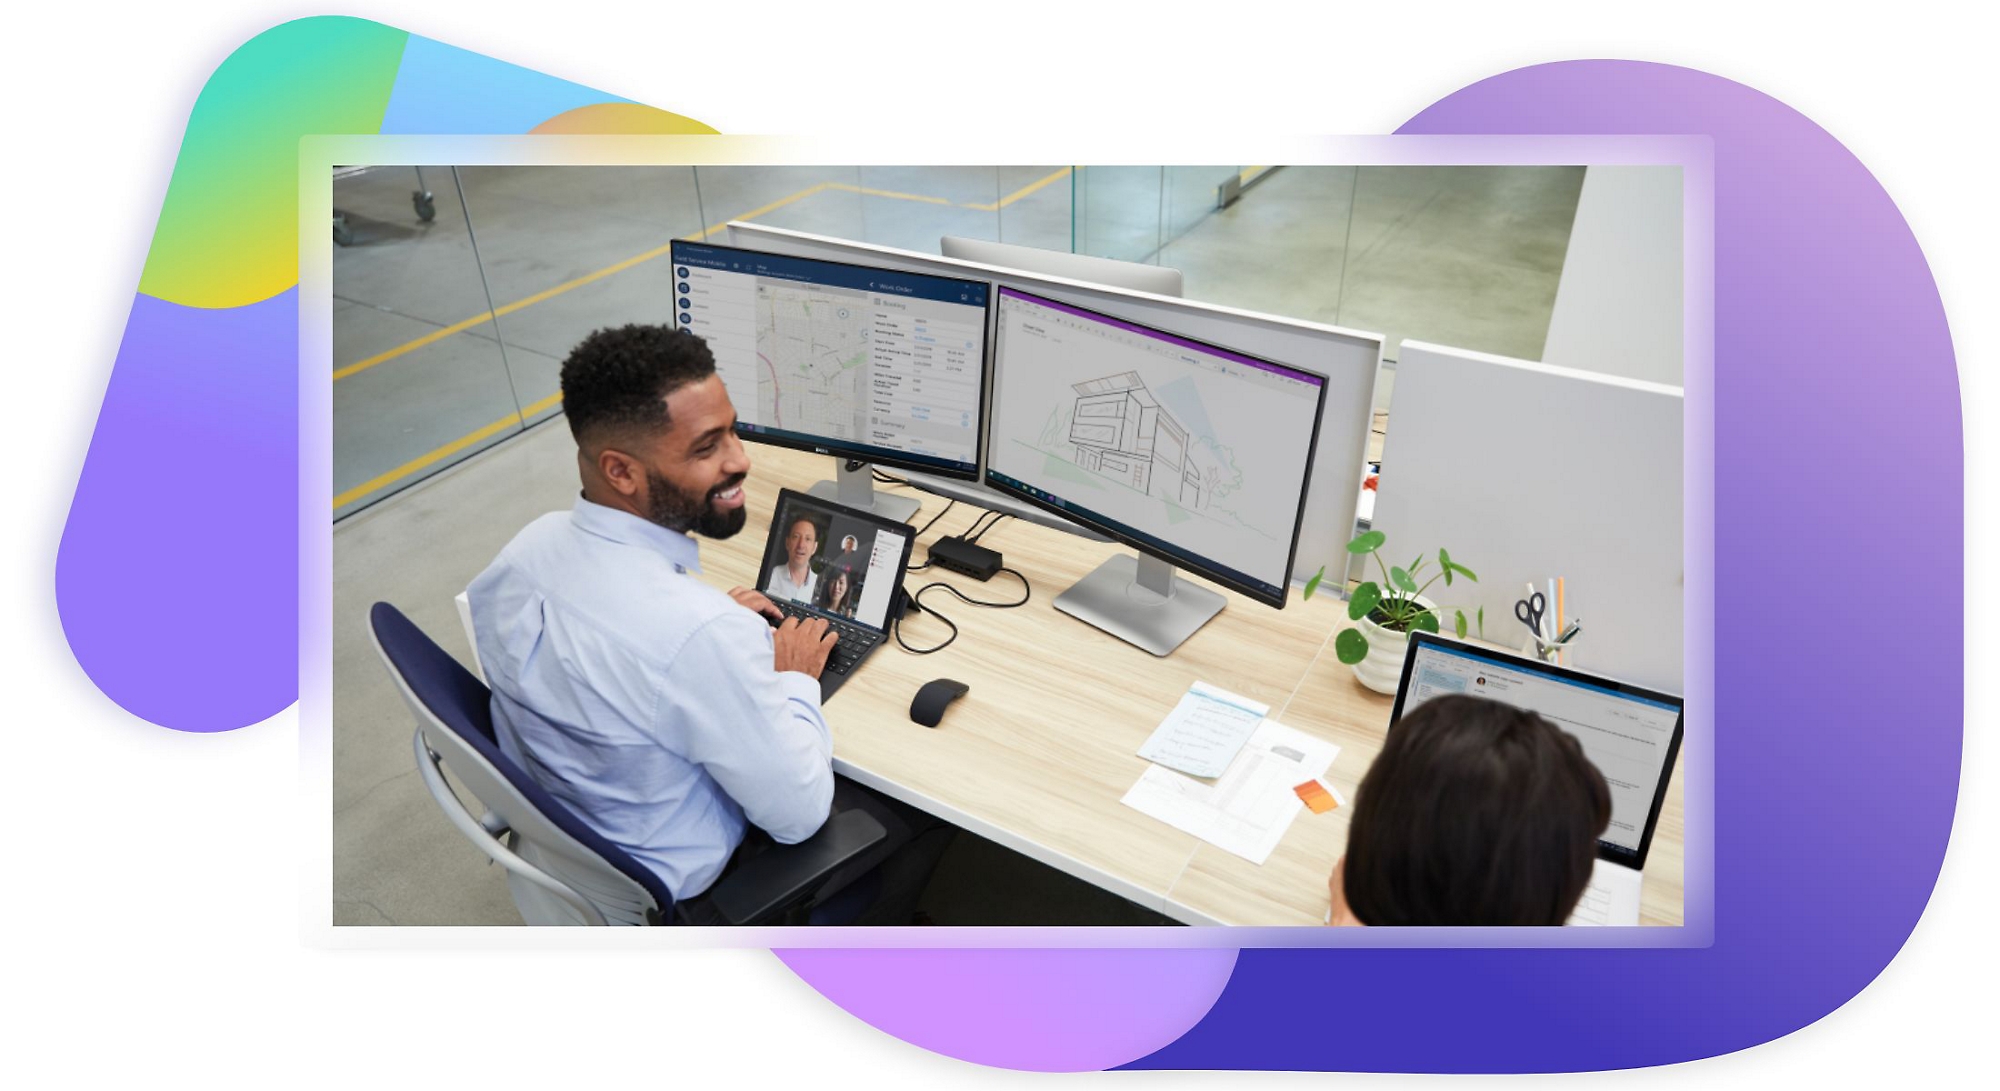 אדם עובד בשולחן העבודה שלו על מחשב נישא וצגים של מחשב שולחני ומשוחח עם עמית לעבודה שנמצא לידו.